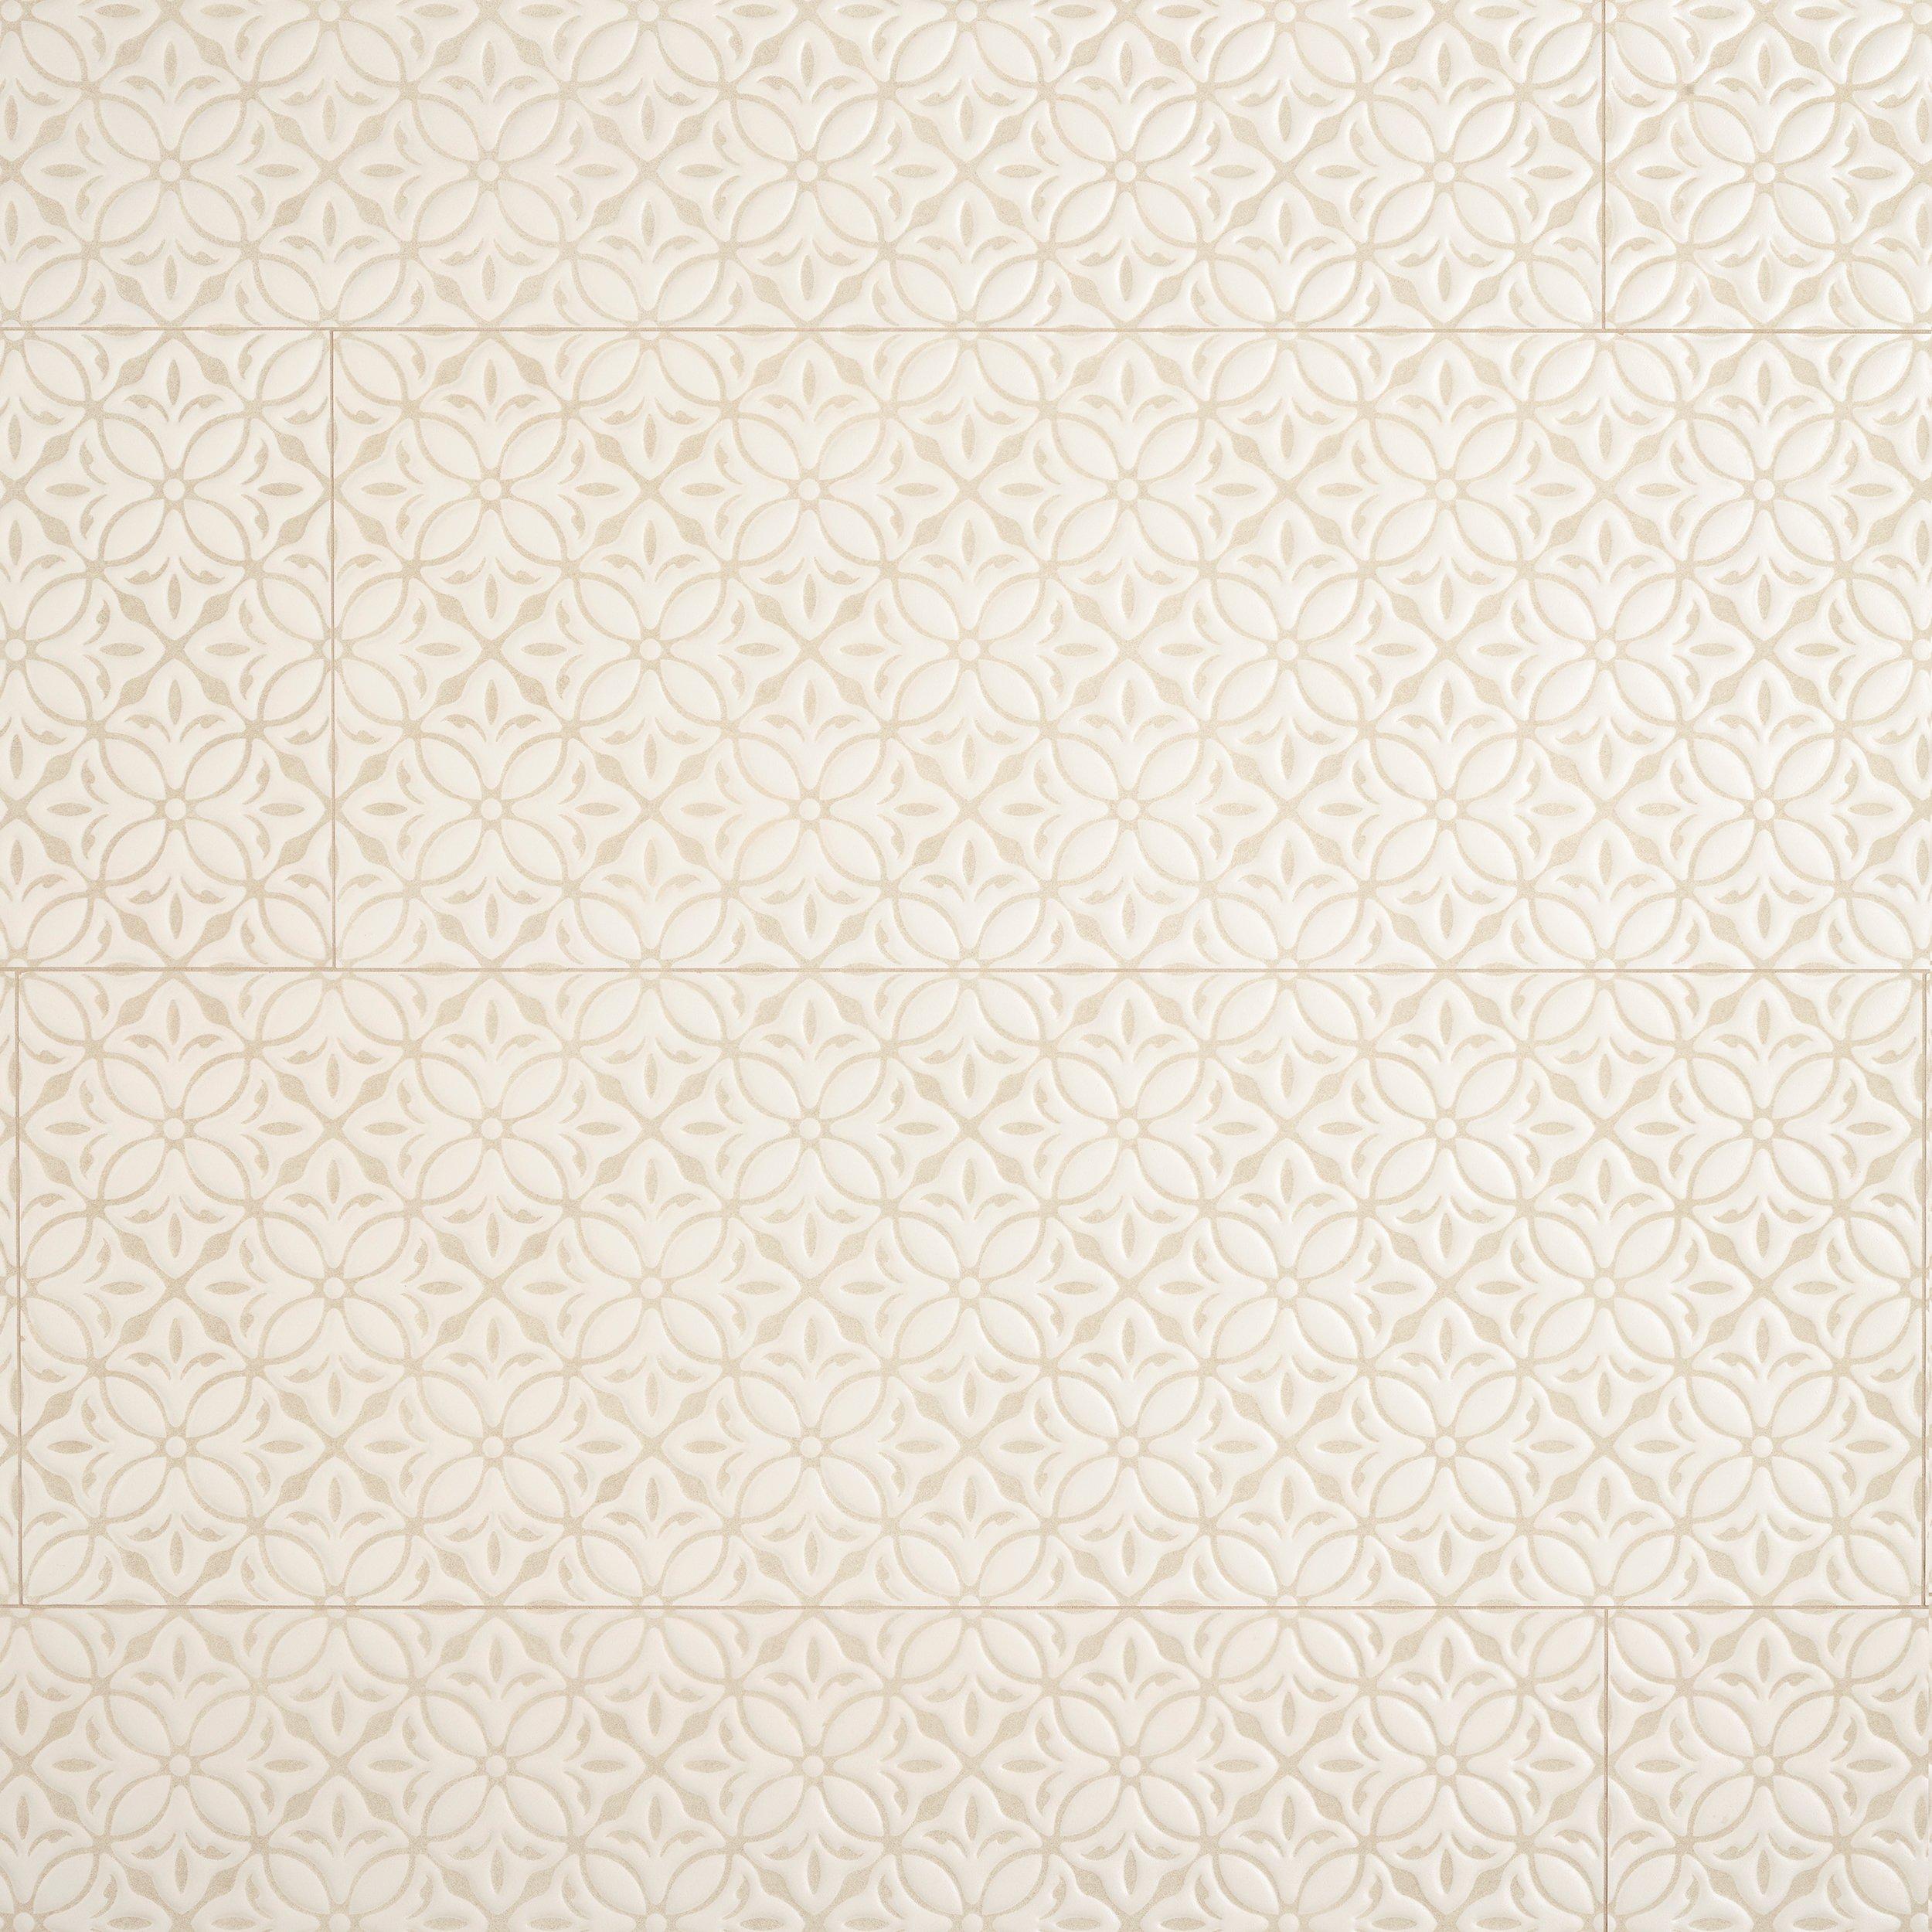 Delano Crema Ceramic Wall Tile